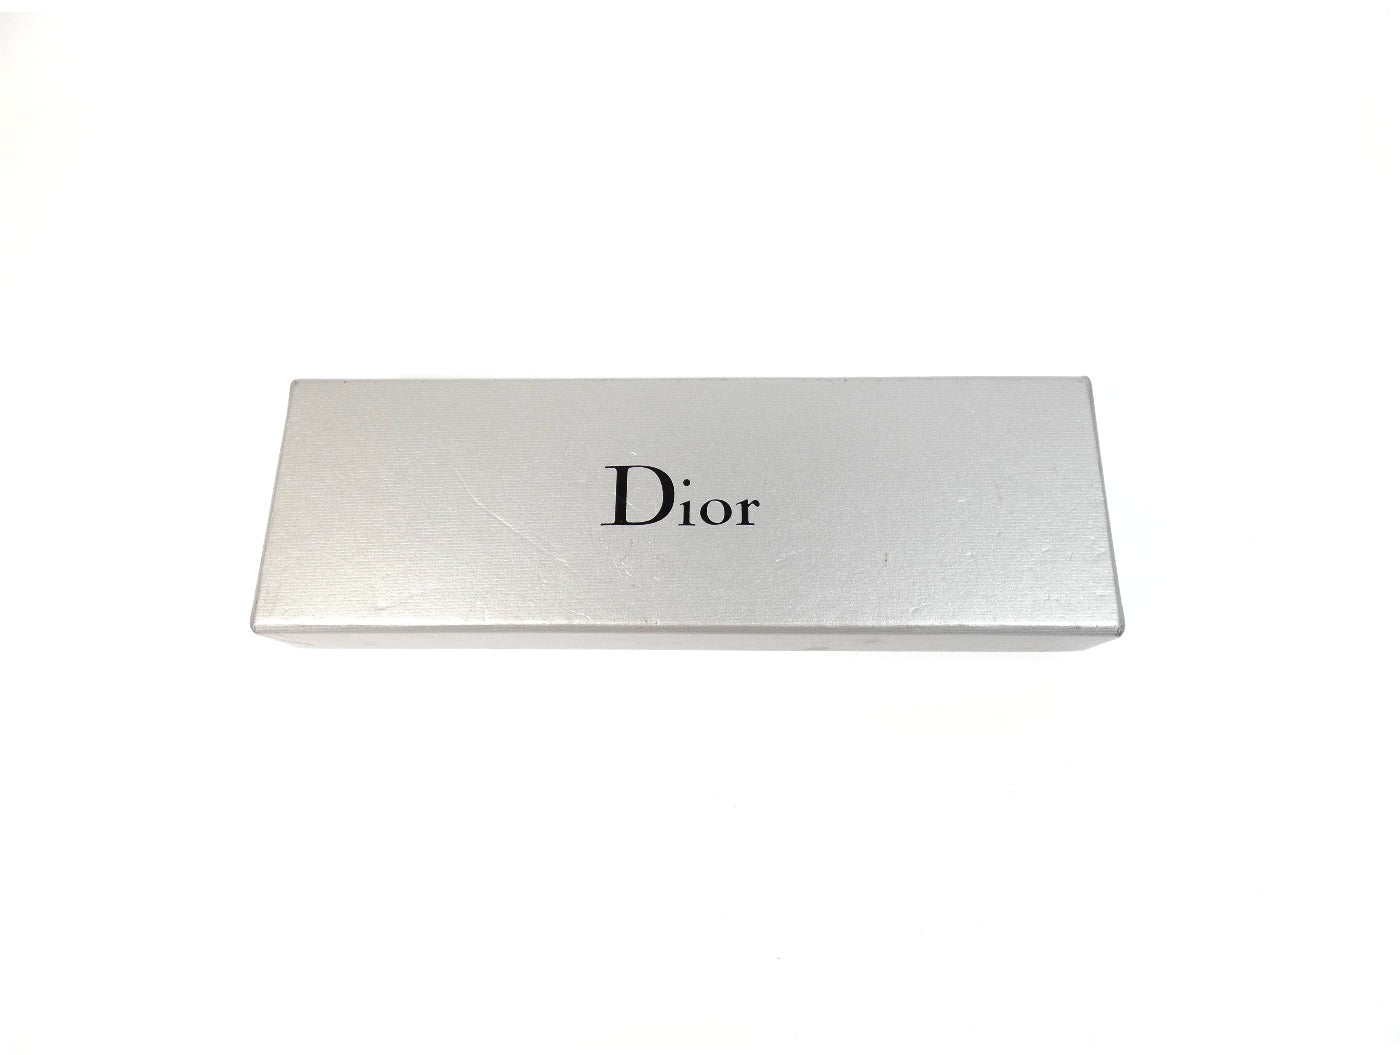 Christian Dior J'Adore Dior Swarovski and Silver Bracelet Bracelet Christian Dior